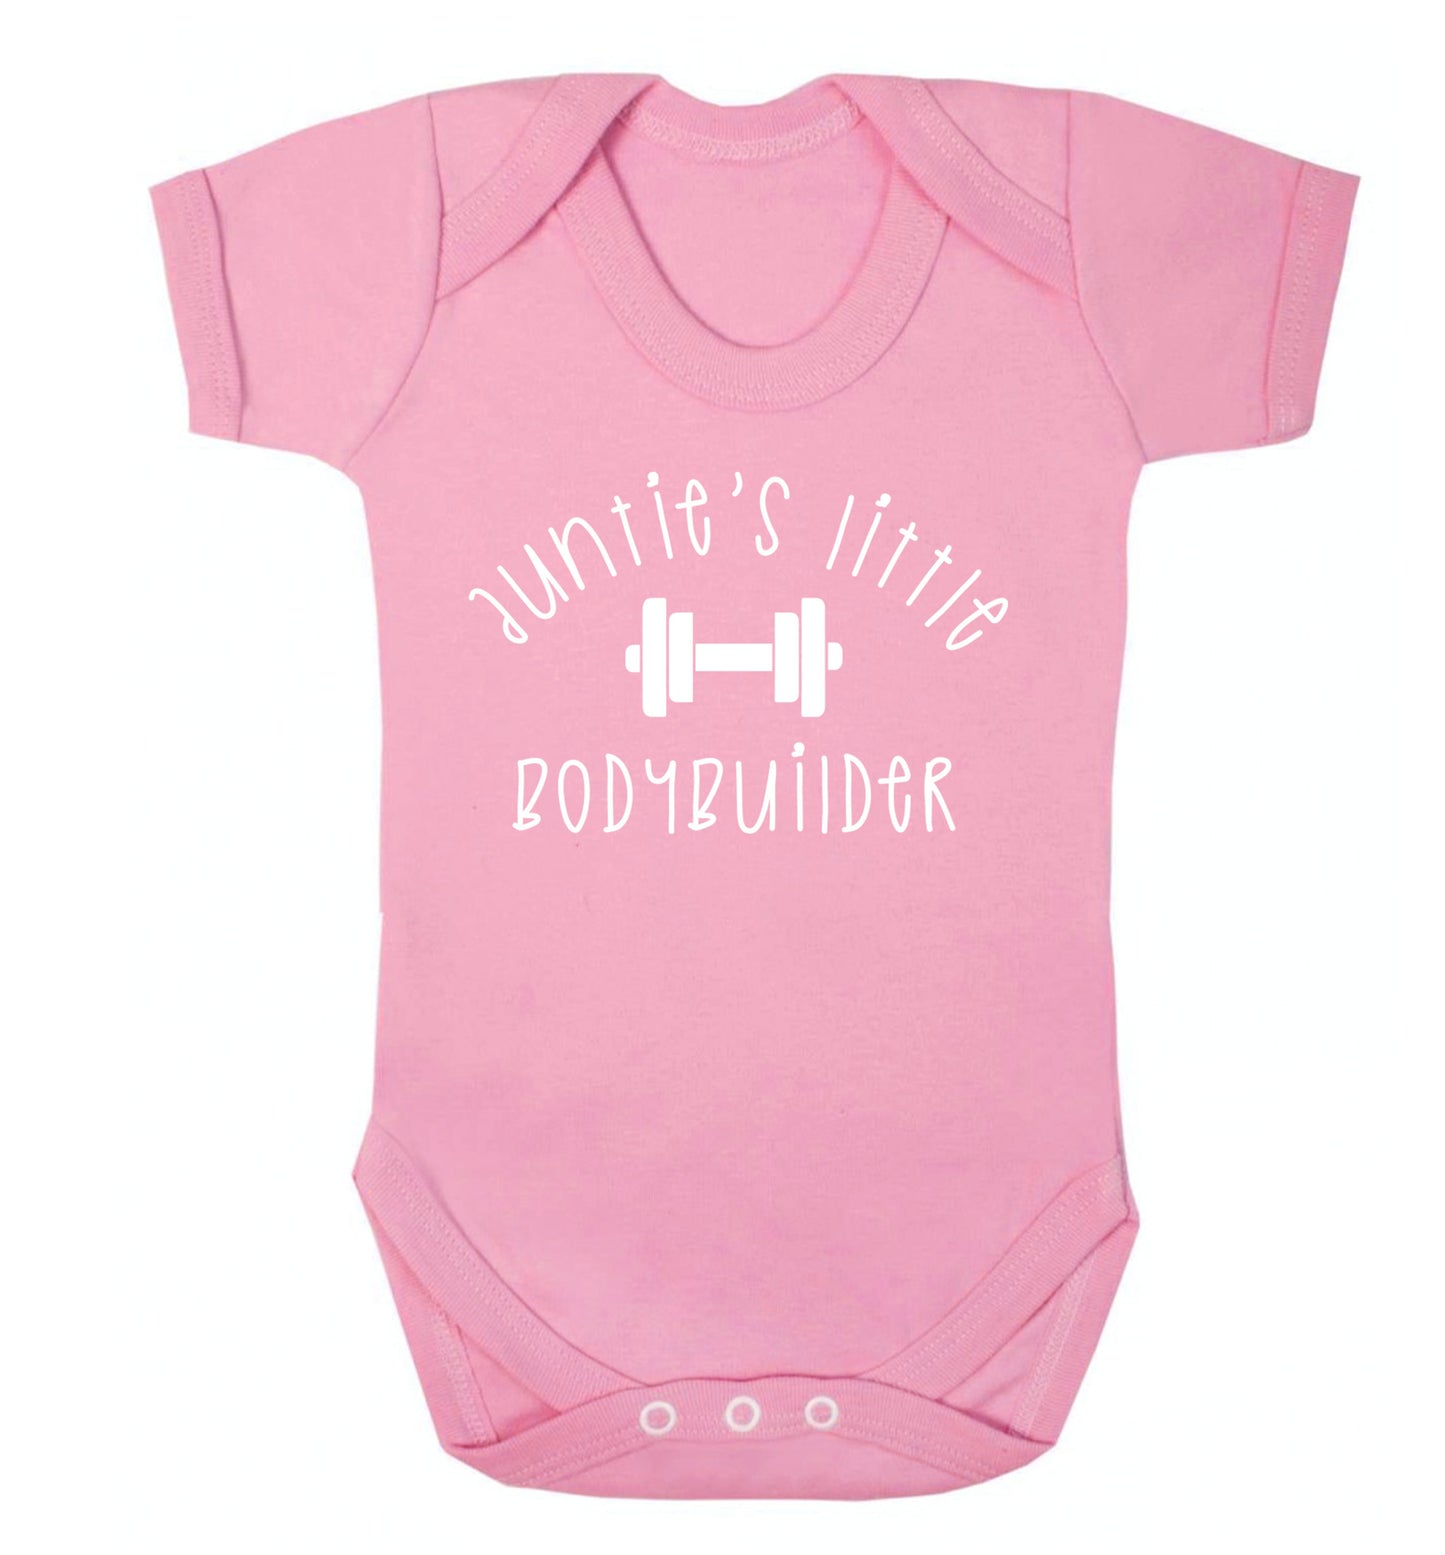 Auntie's little bodybuilder Baby Vest pale pink 18-24 months